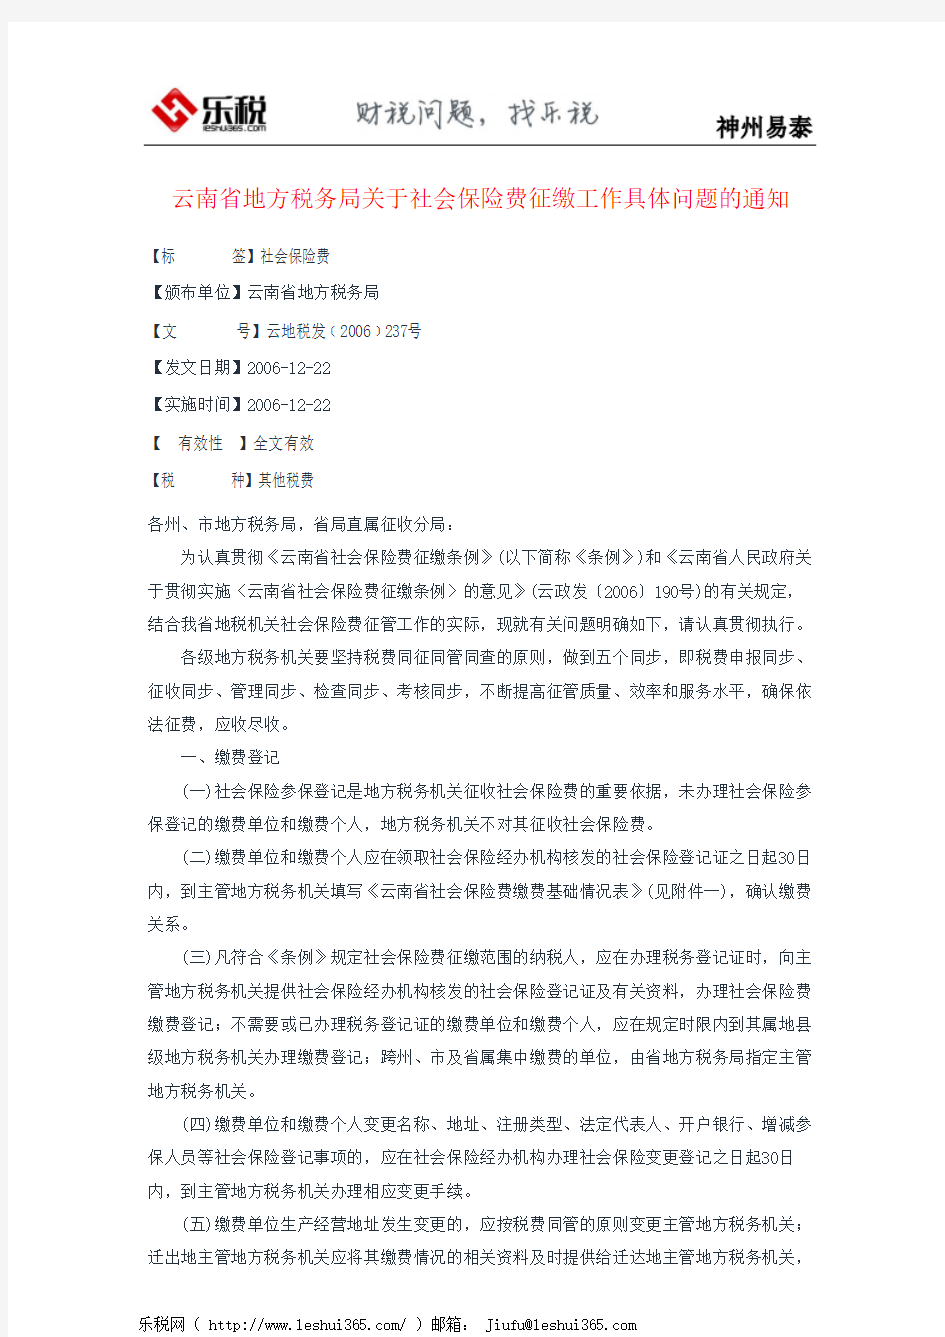 云南省地方税务局关于社会保险费征缴工作具体问题的通知